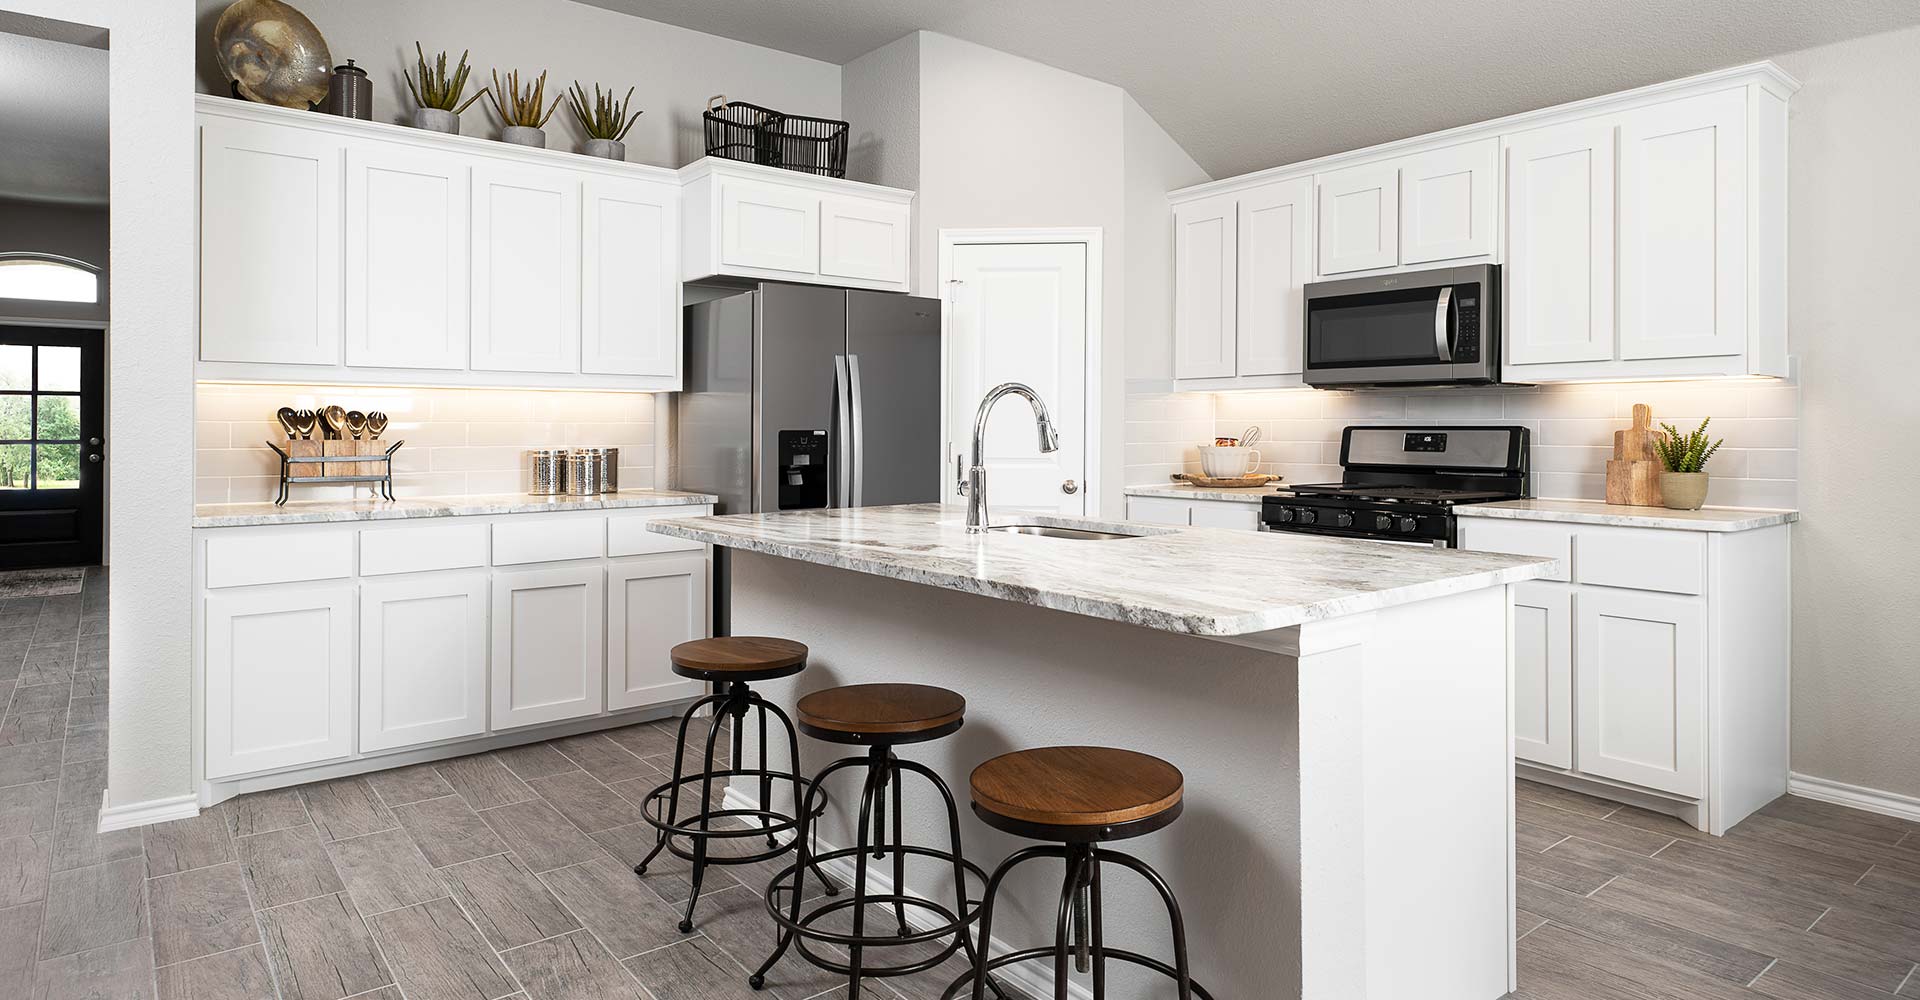 Cheyenne Floorplan Model Home Kitchen in Montclaire by Impression Homes